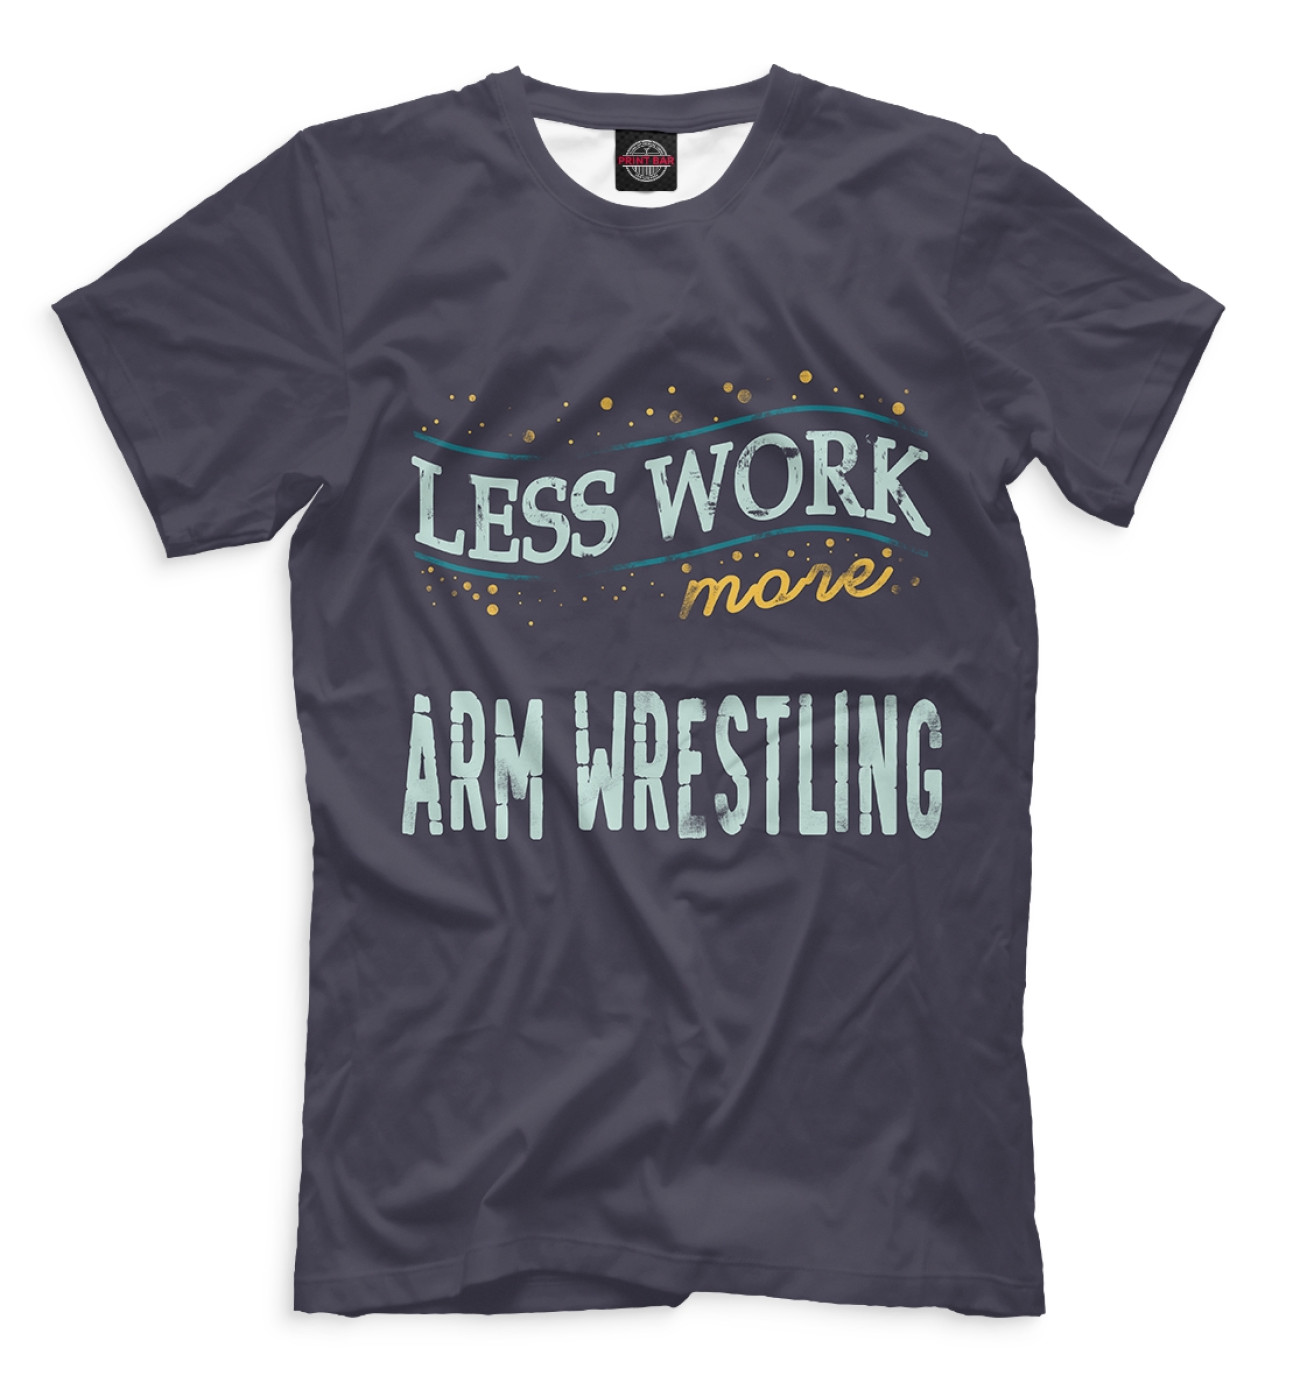 Мужская Футболка Less Work more Arm Wrestling, артикул: RES-691191-fut-2